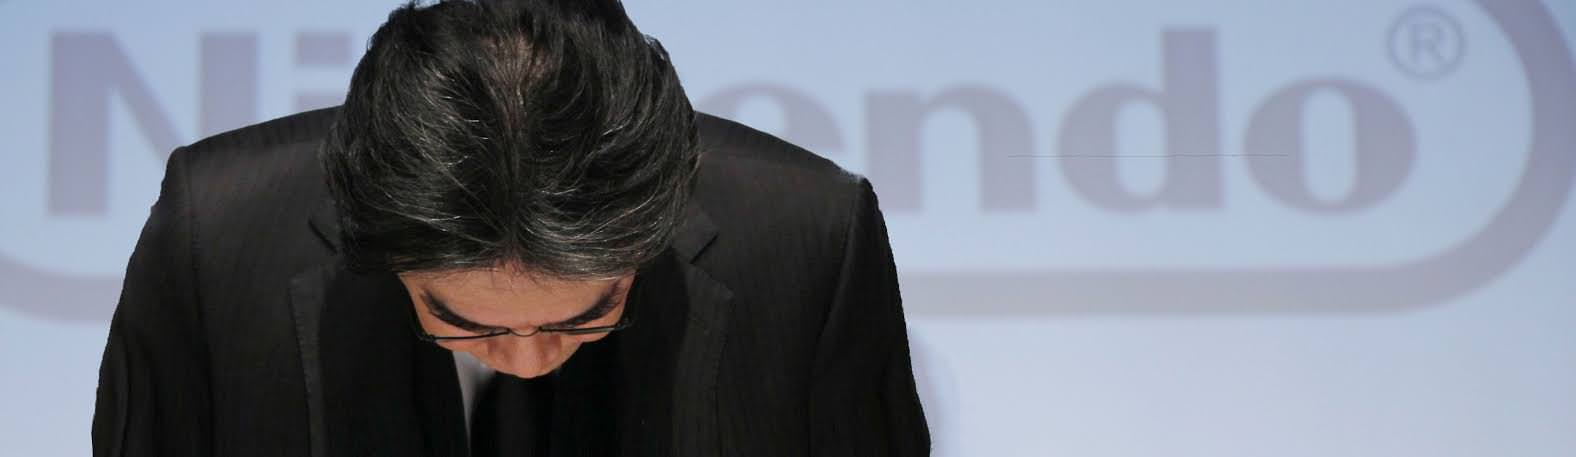 El presidente de Nintendo Europa, Satoru Shibata, habla sobre Iwata